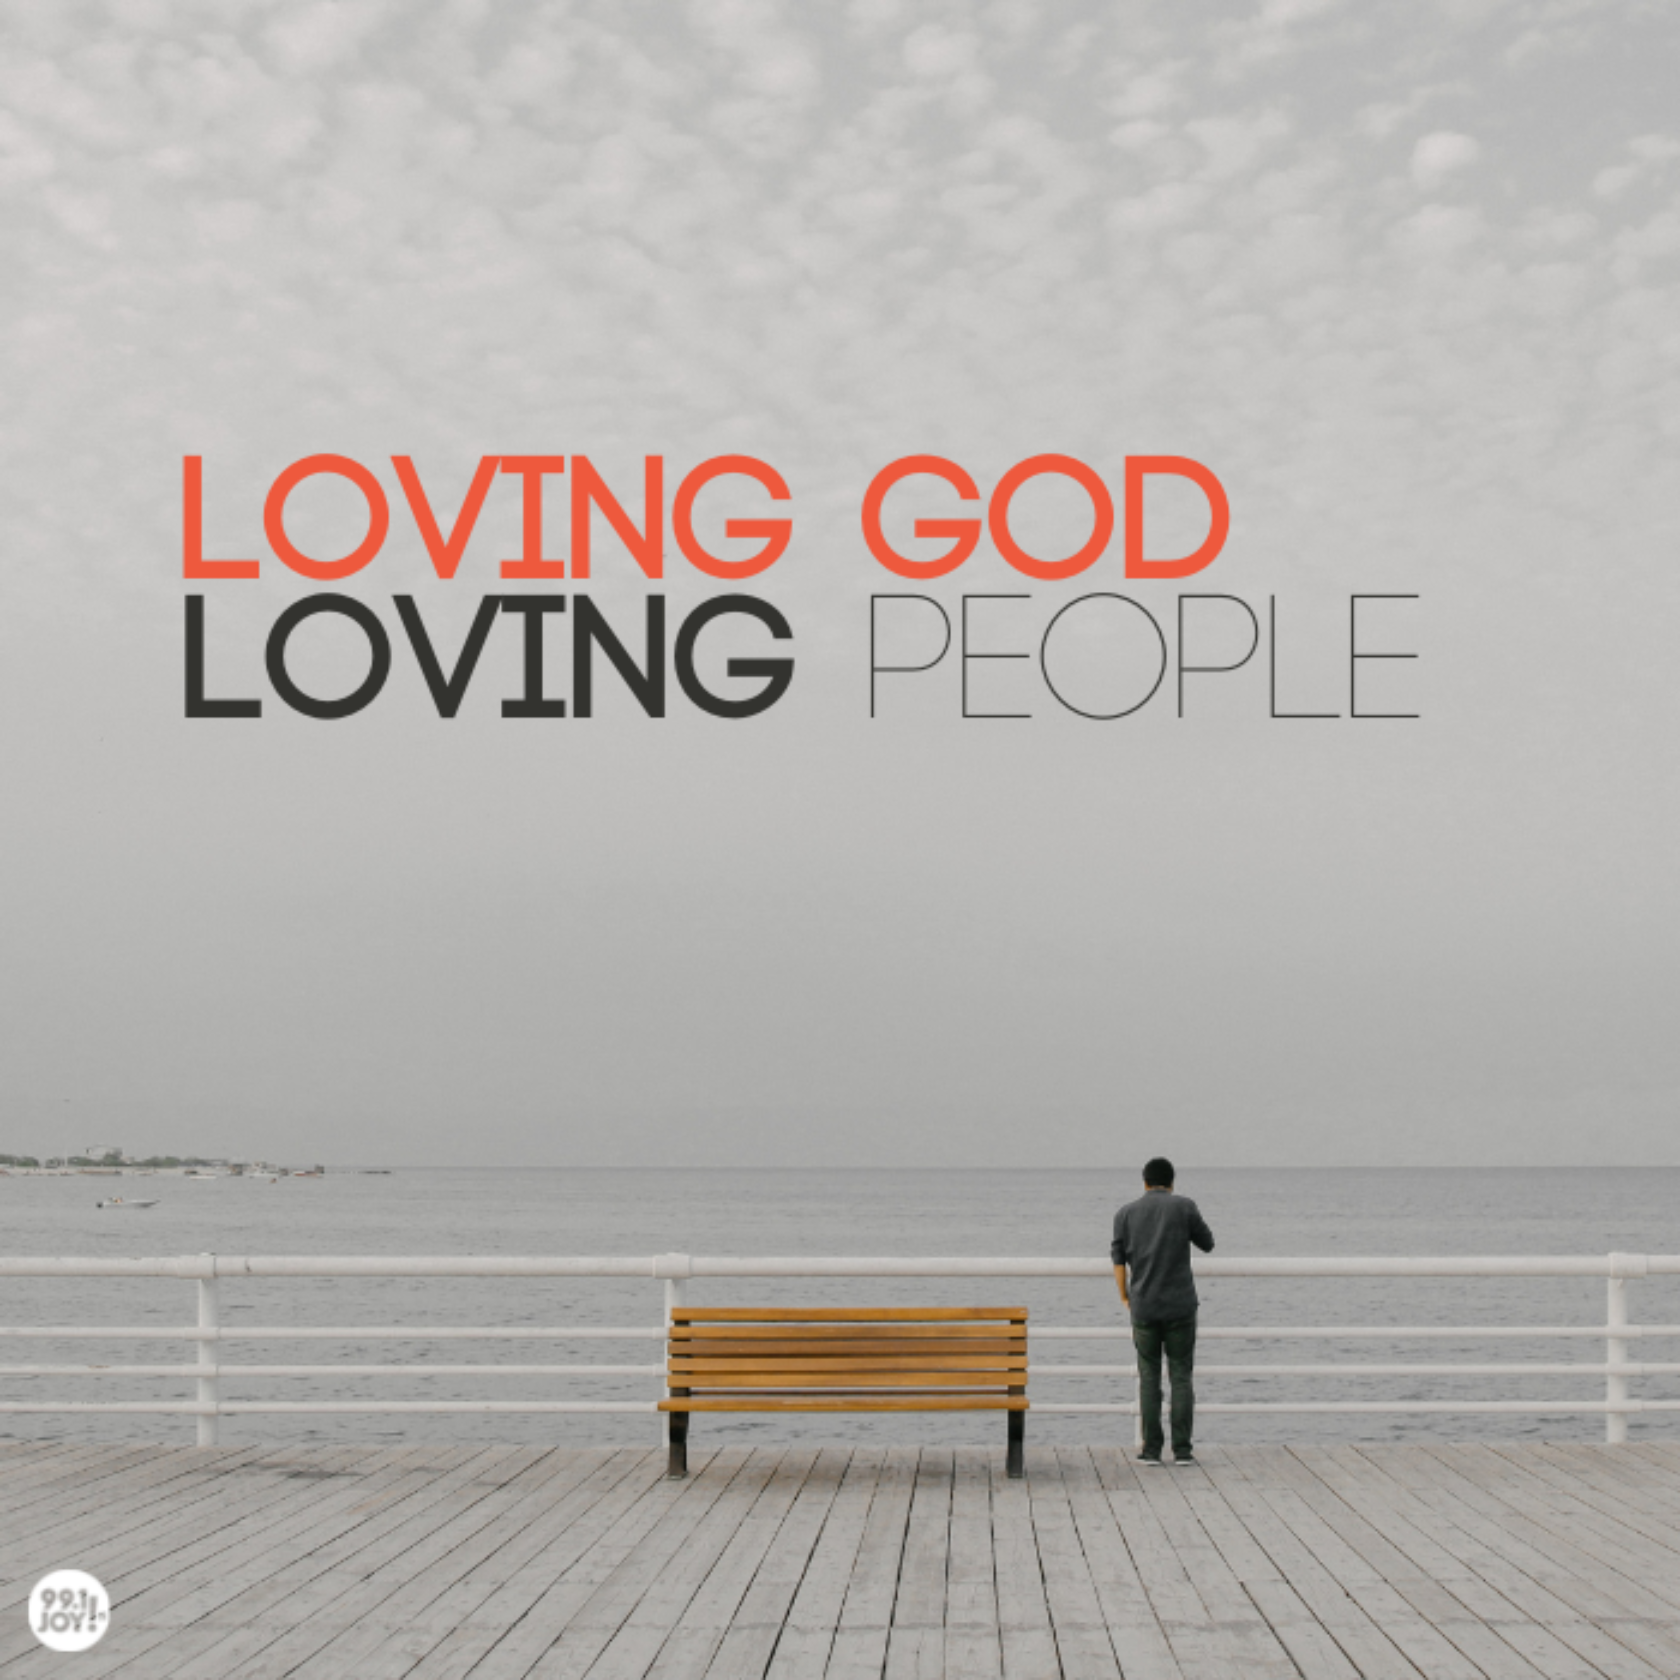 Loving God. Loving People.